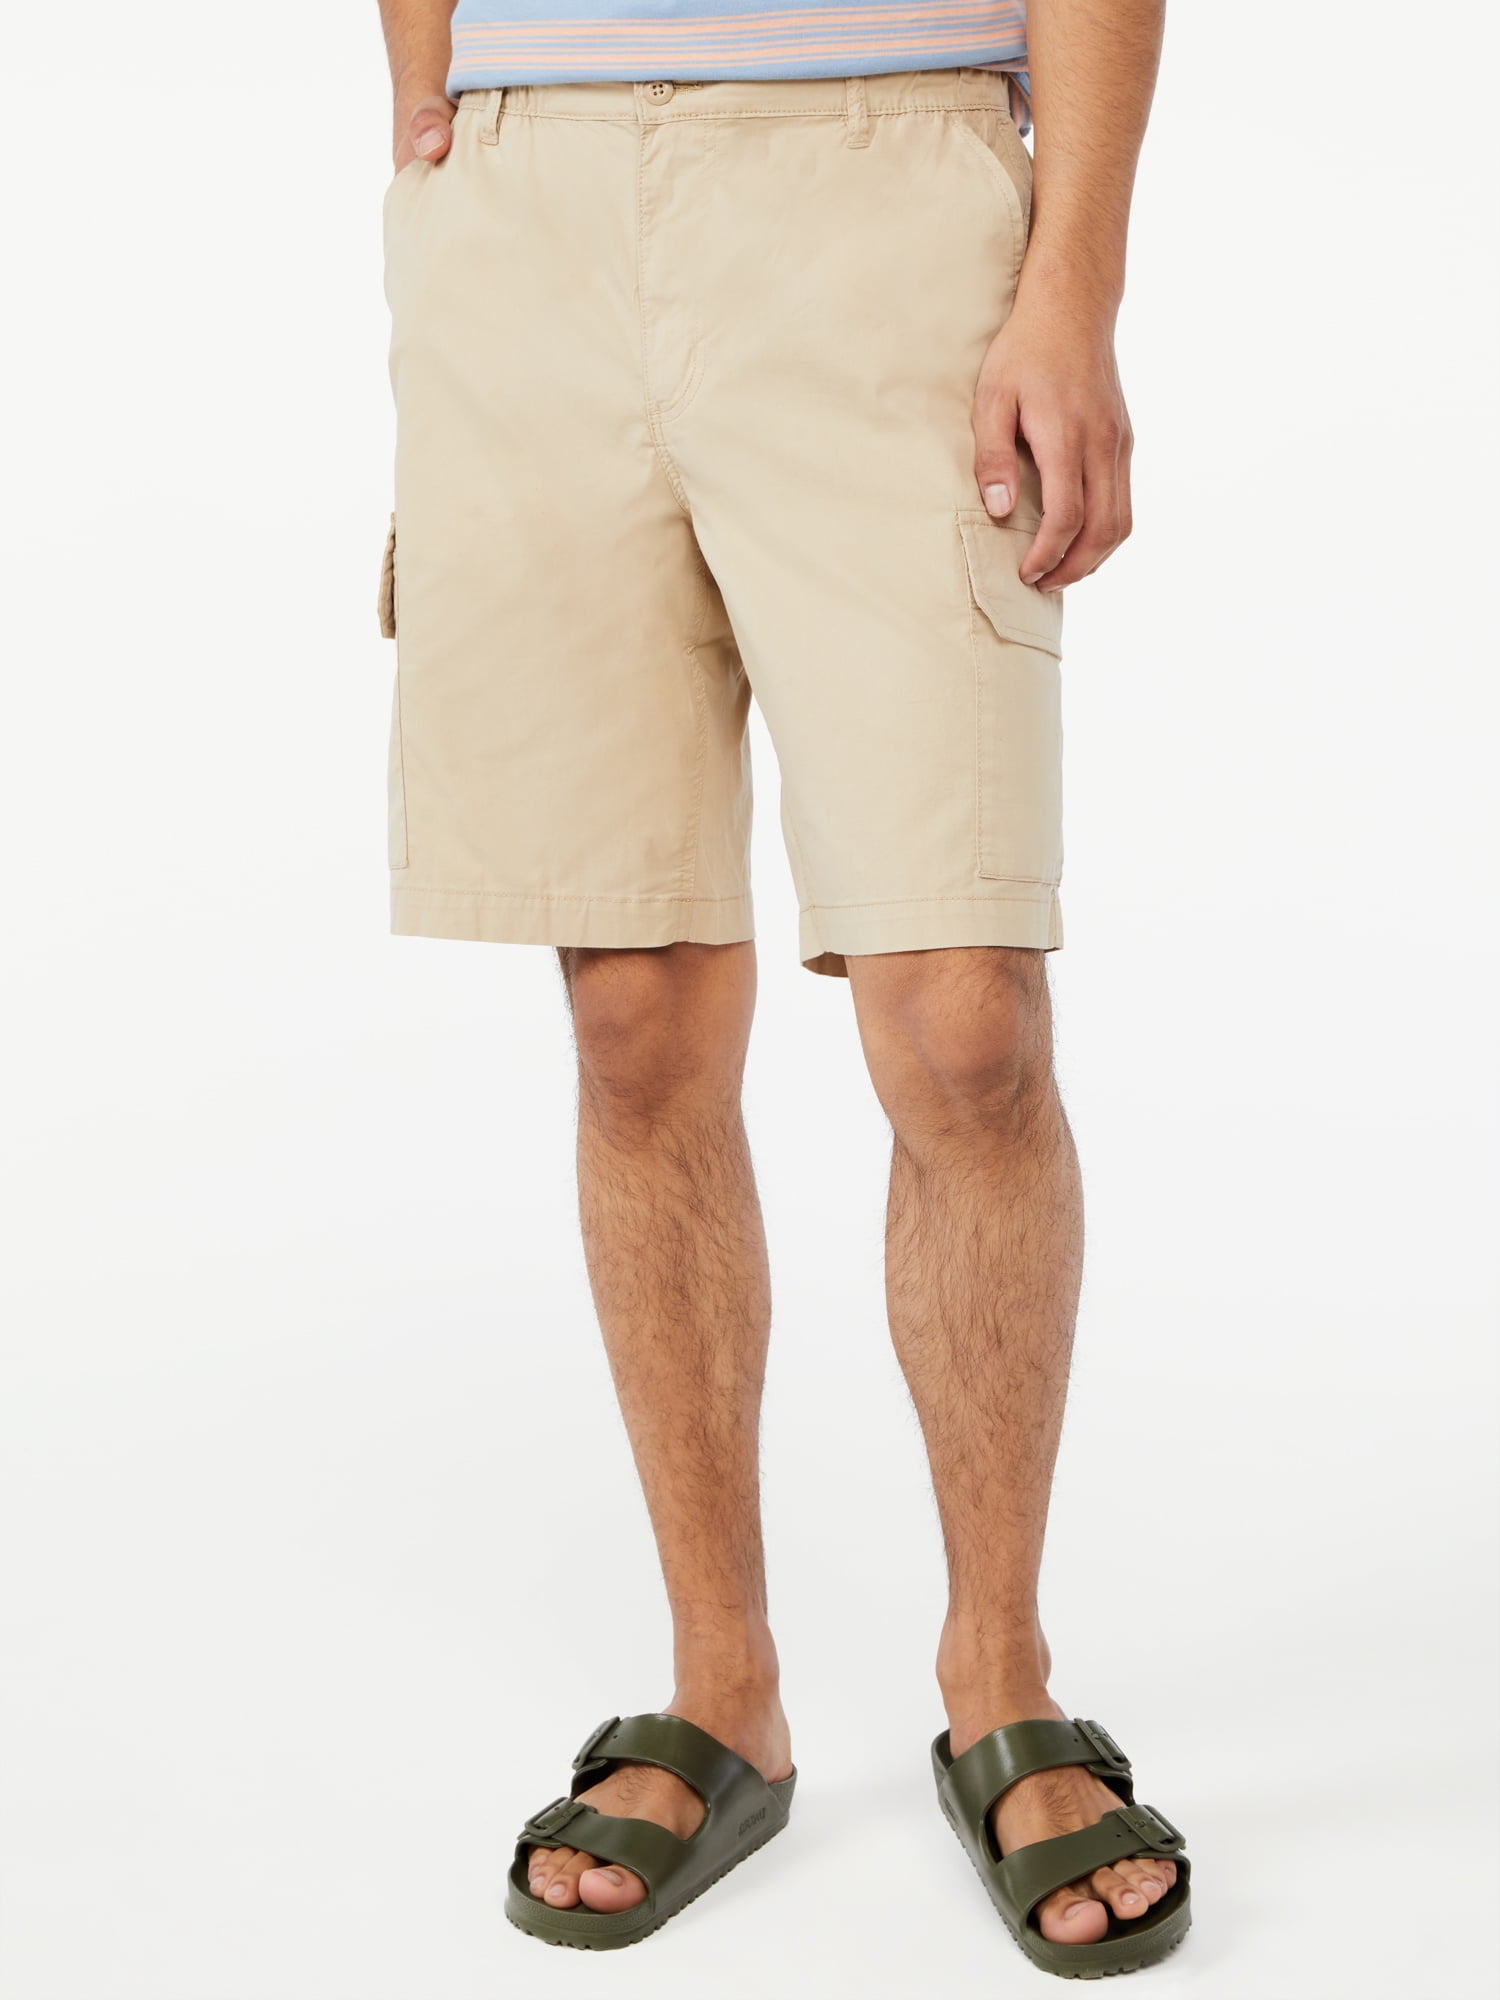 Free Assembly Men’s E-Waist Cargo Shorts - Walmart.com